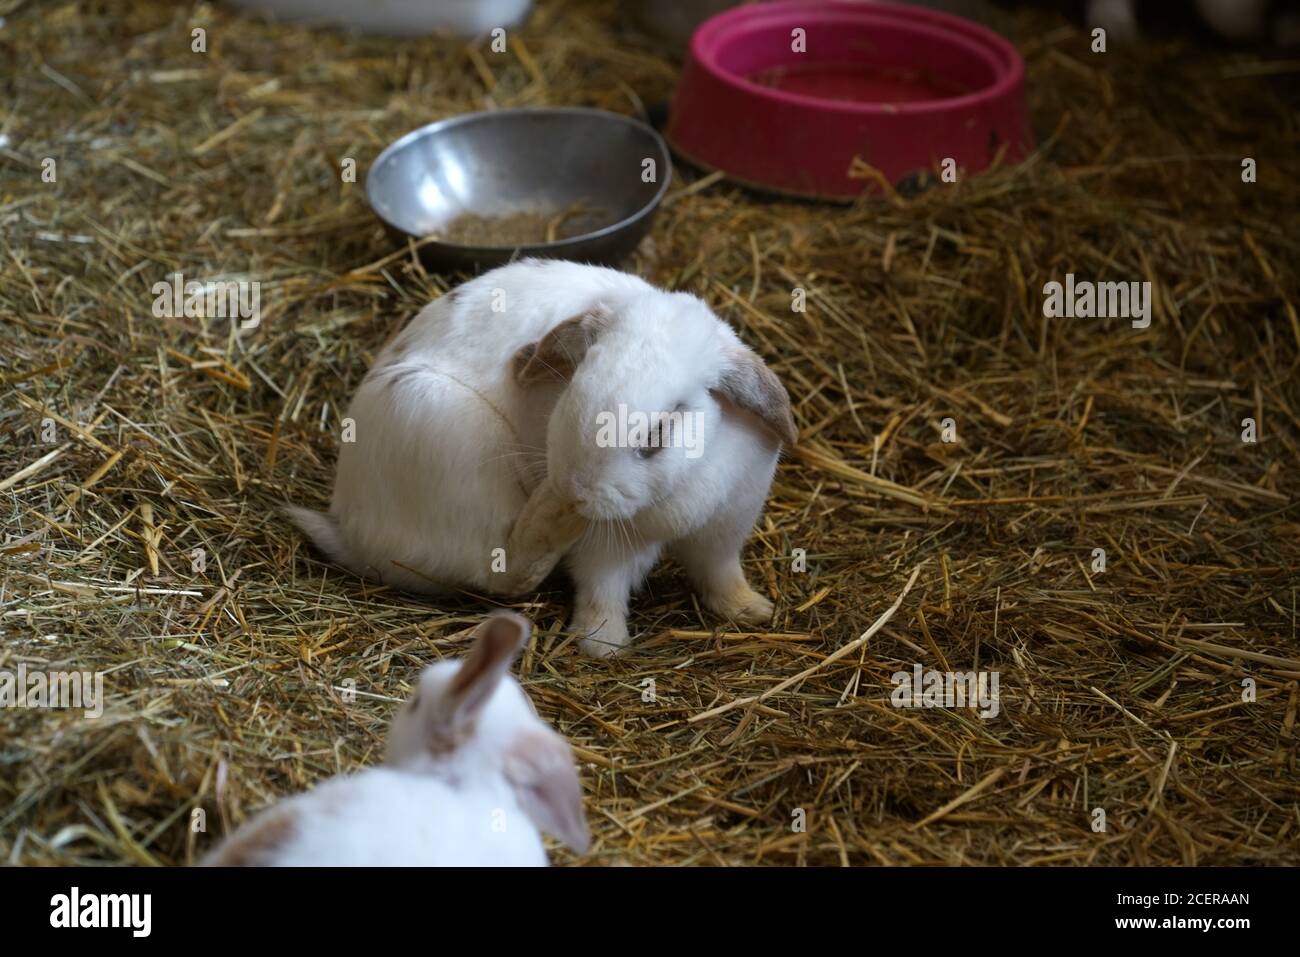 Carino coniglietti bianchi seduti su erba secca Foto Stock